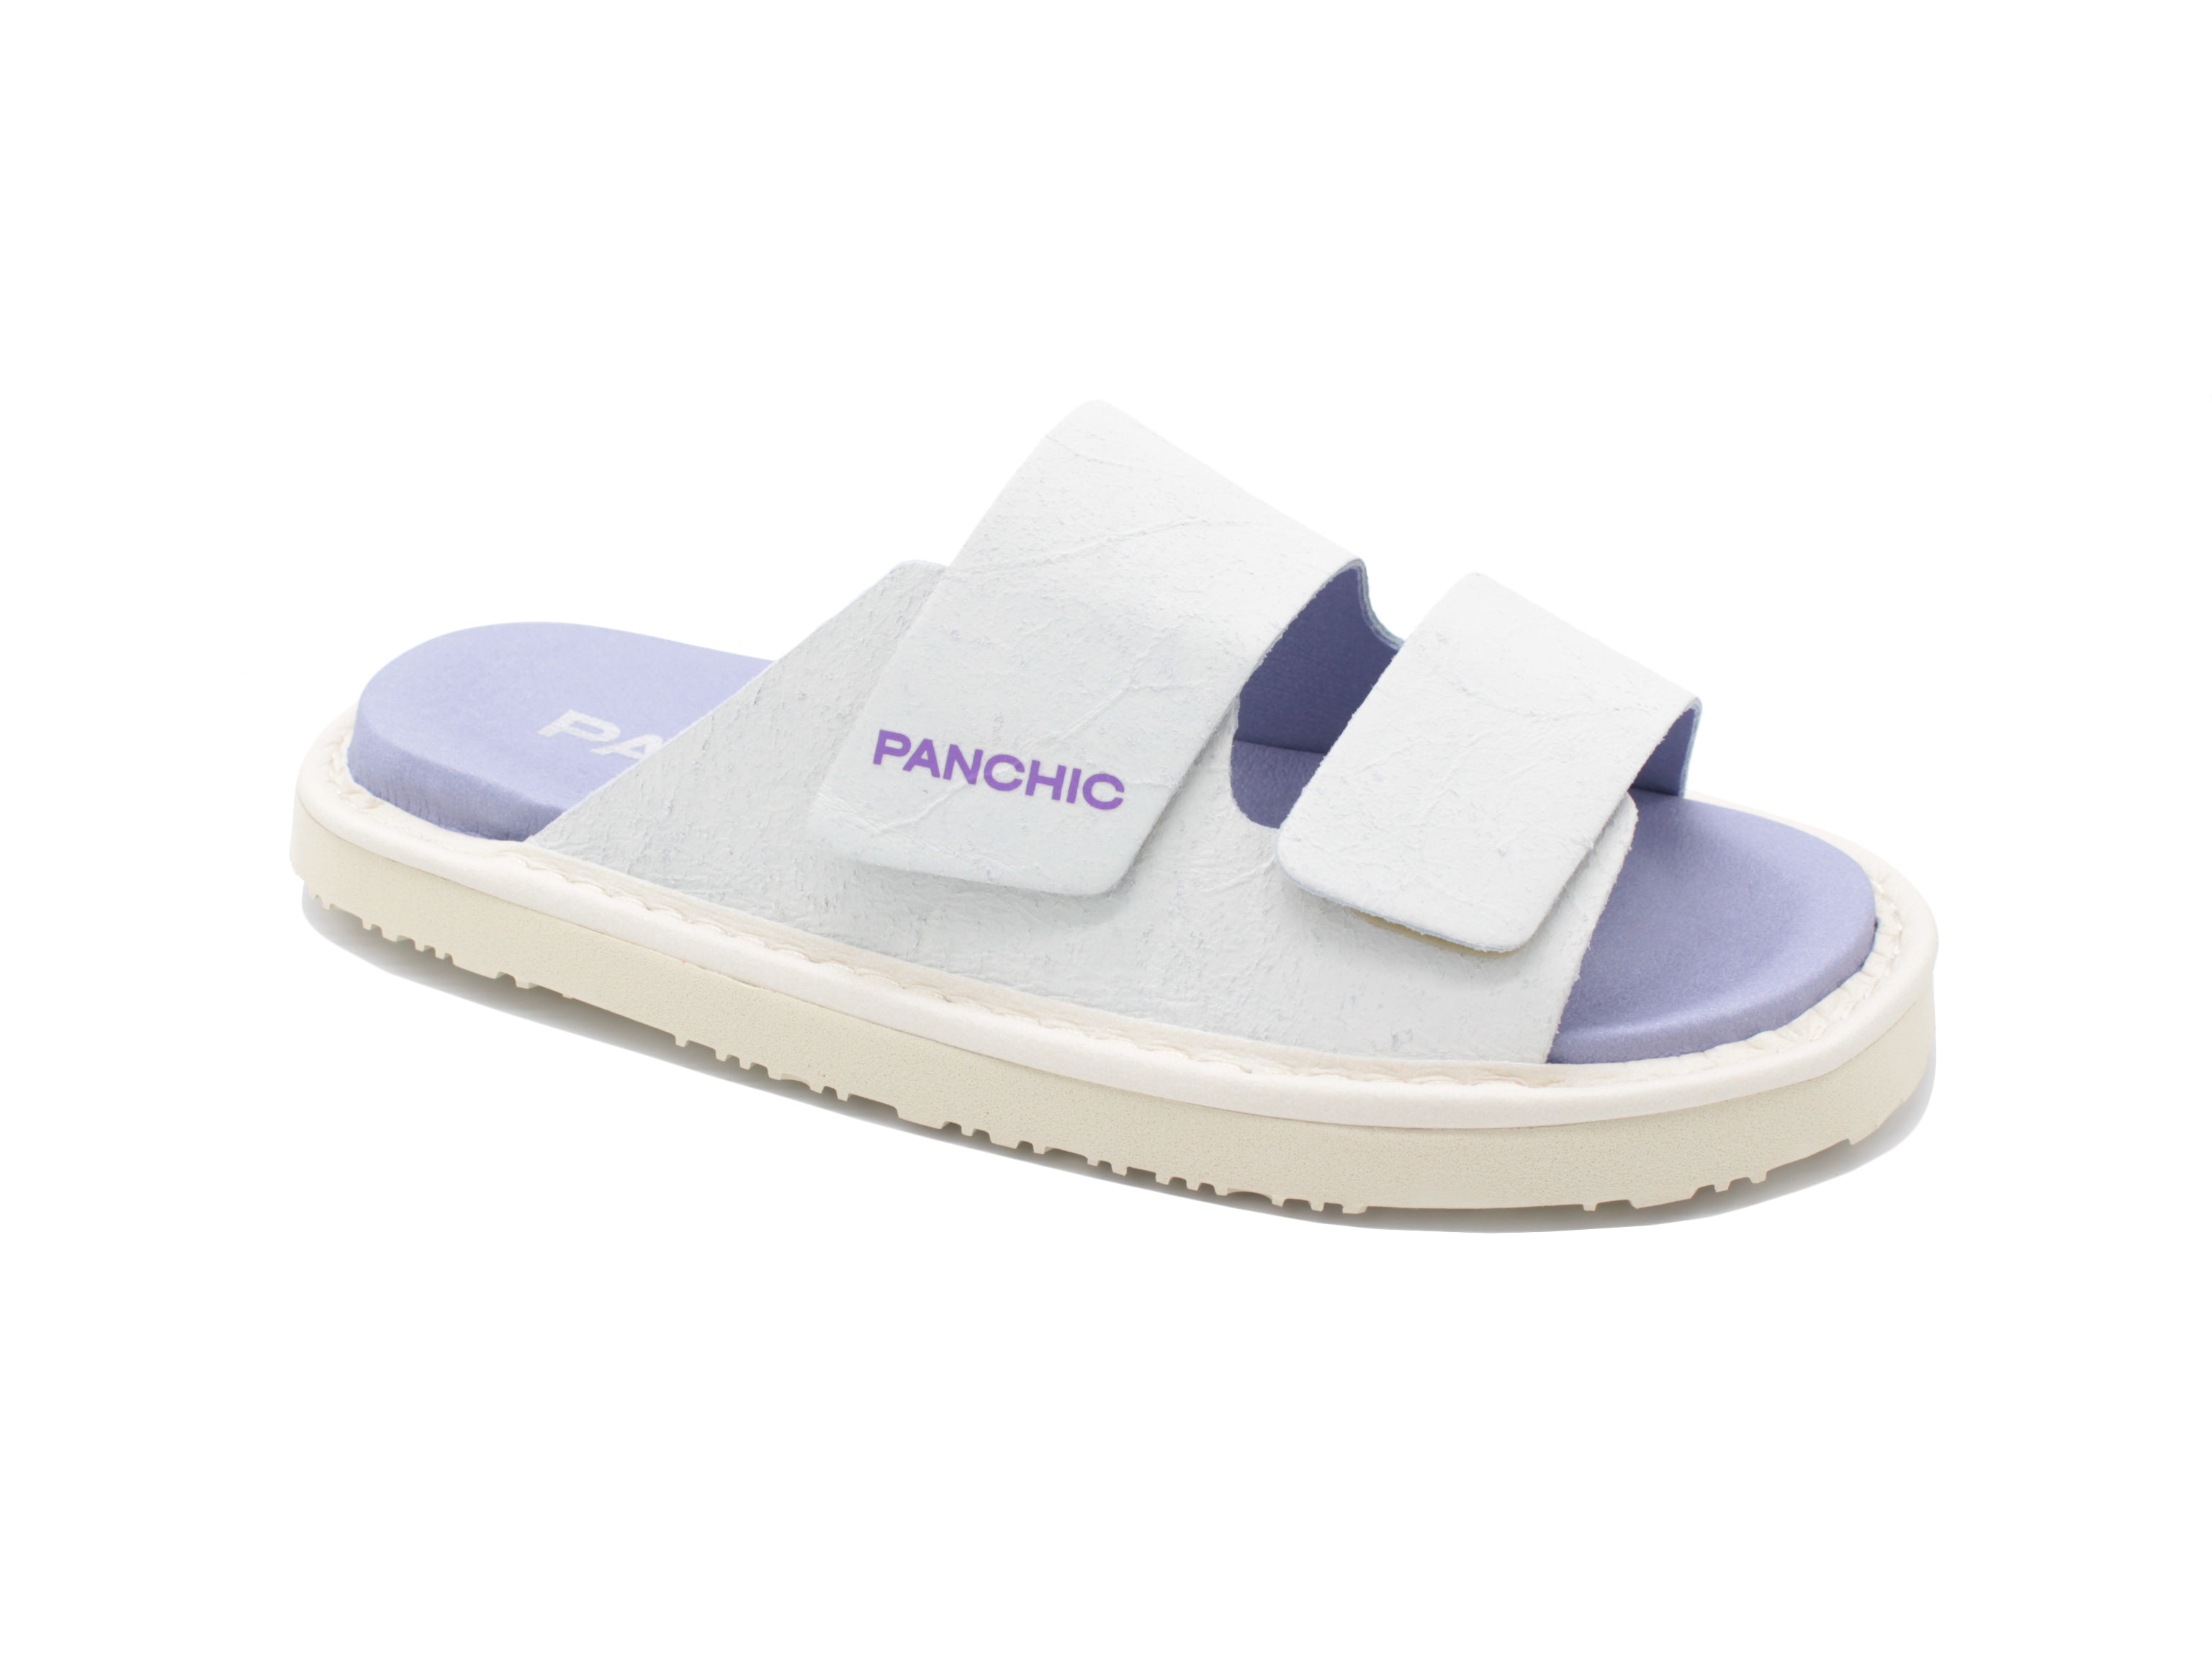 Panchic flat slide